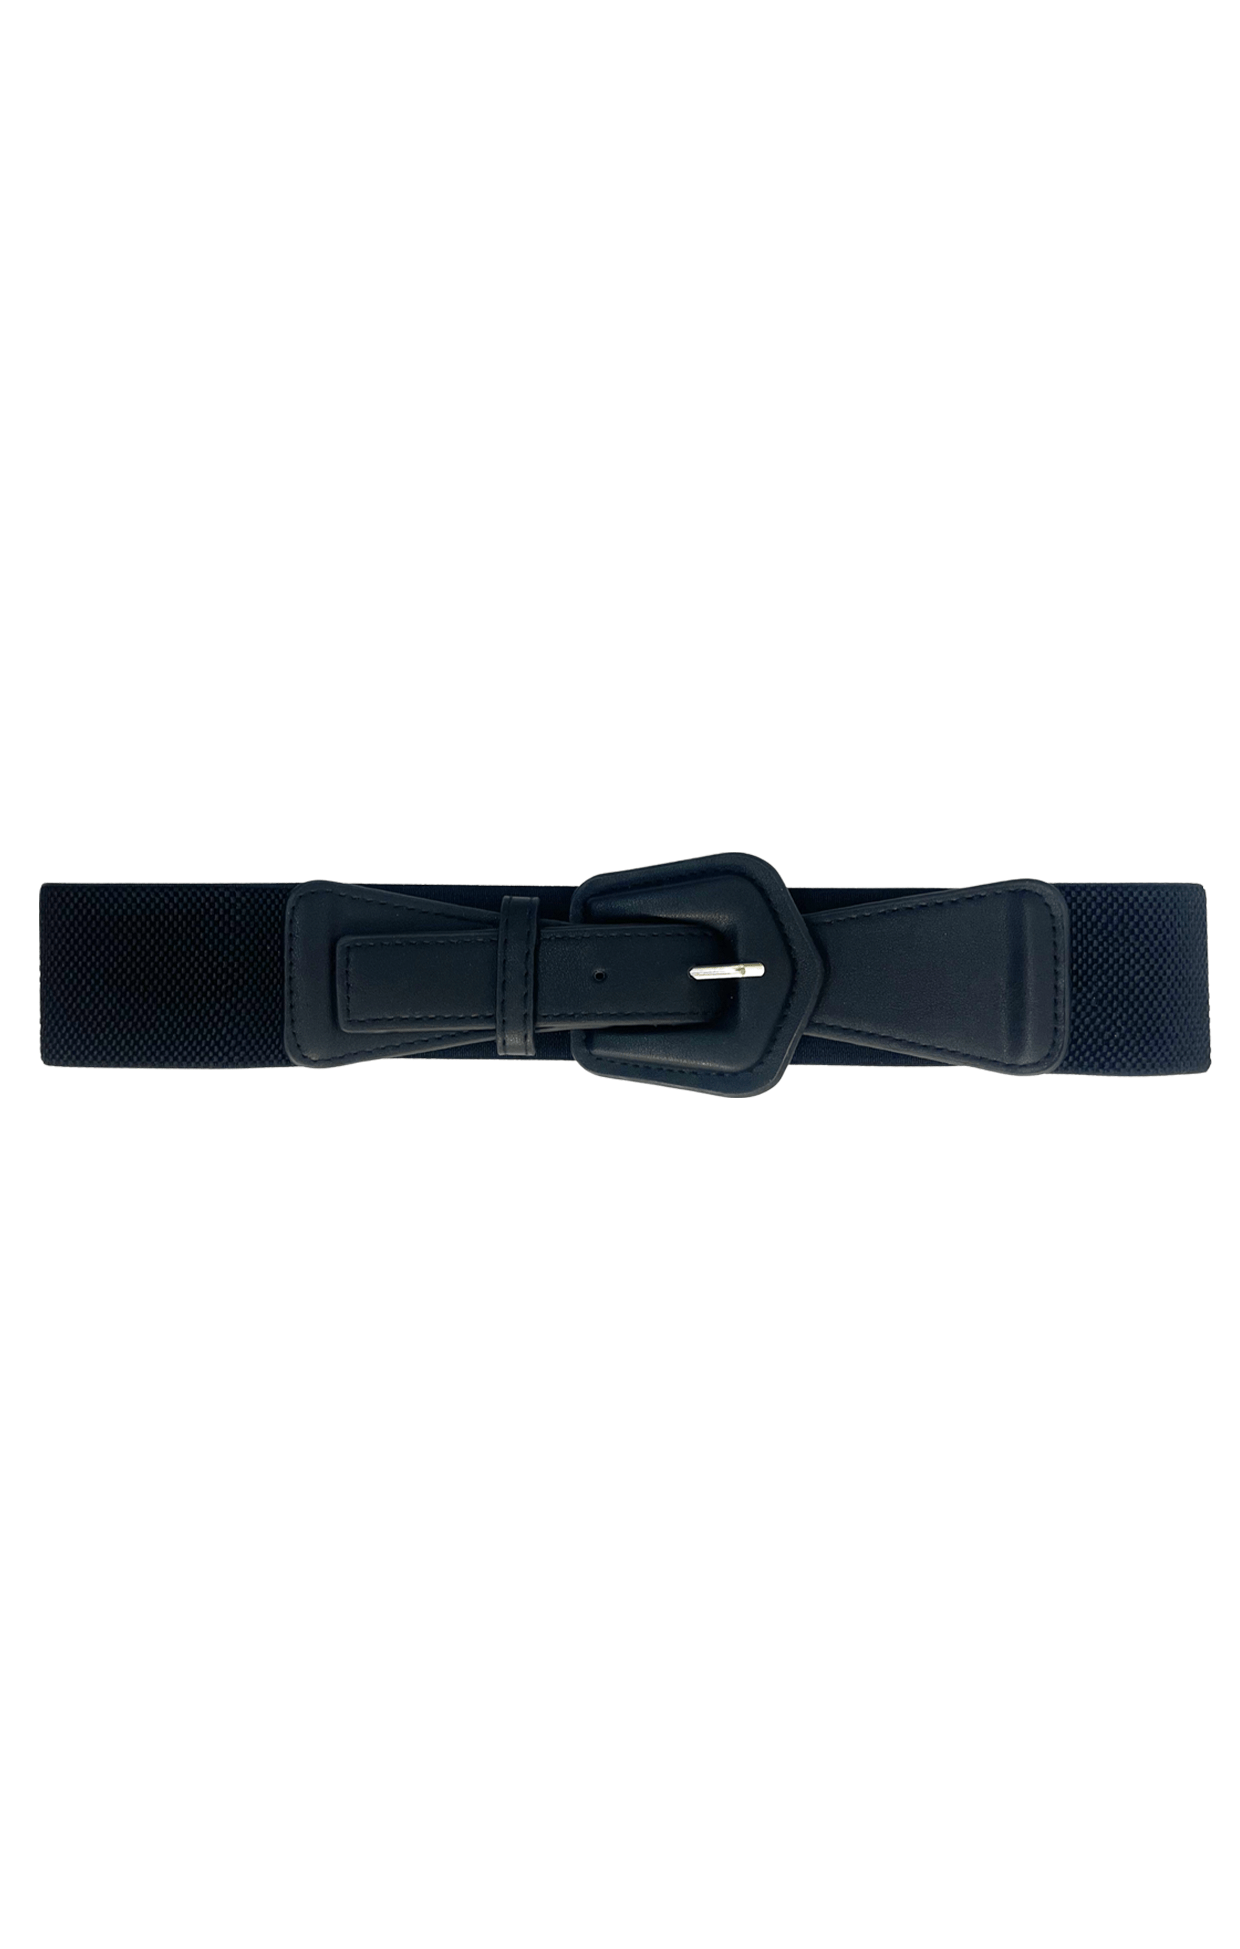 ACCESSORIES Belts One Size / Black GEOMETRIC BUCKLE BELT IN BLACK